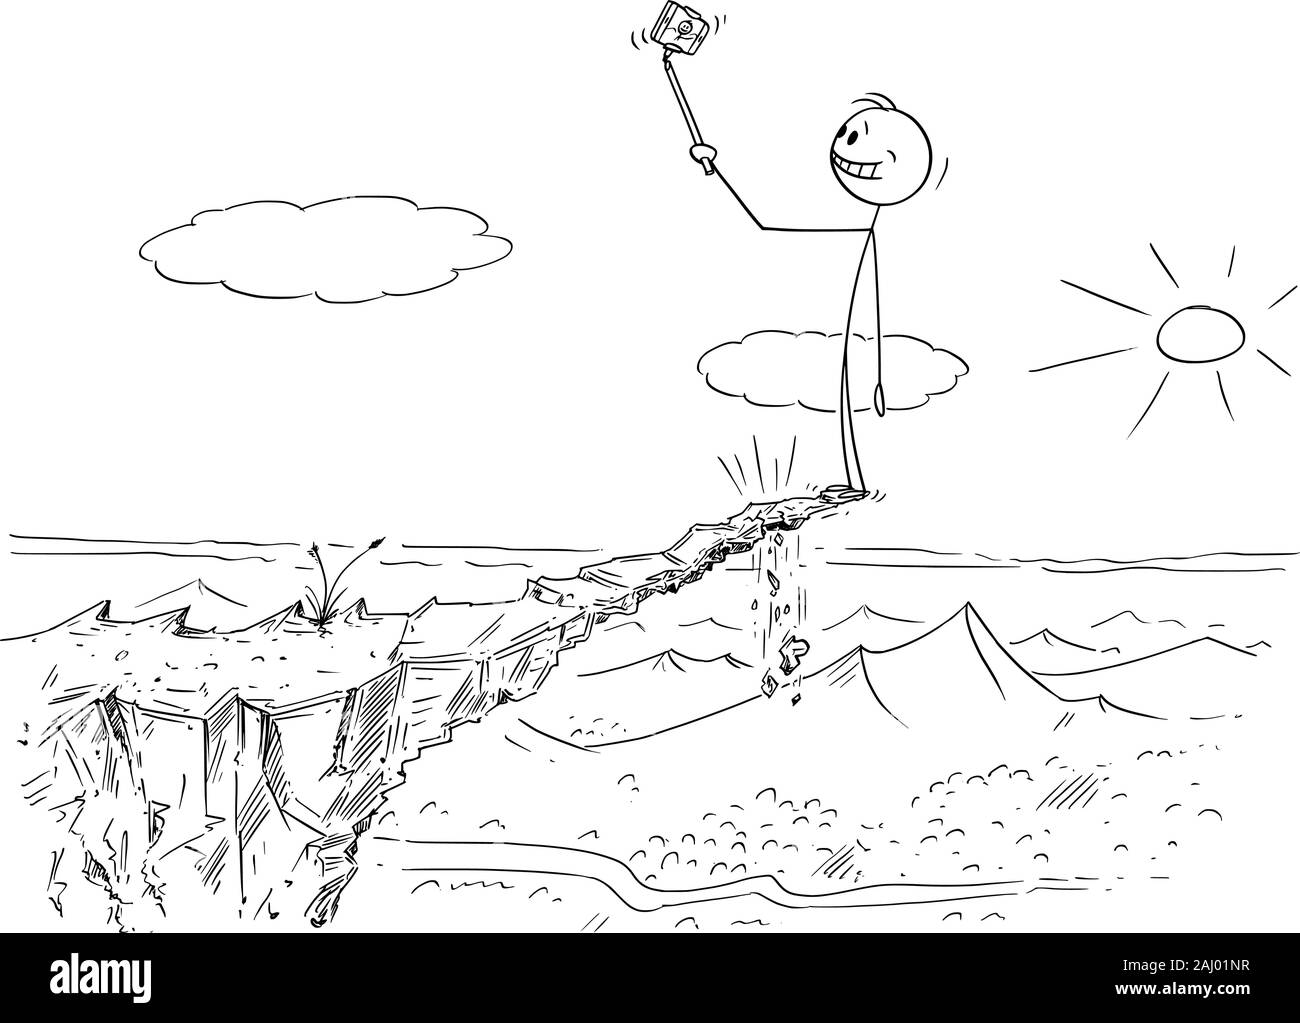 Vector cartoon stick figura disegno illustrazione concettuale dell'uomo prendendo pericolose selfie foto su unstable alta roccia di rischiare la sua vita, perché egli è in grado di cadere. Illustrazione Vettoriale